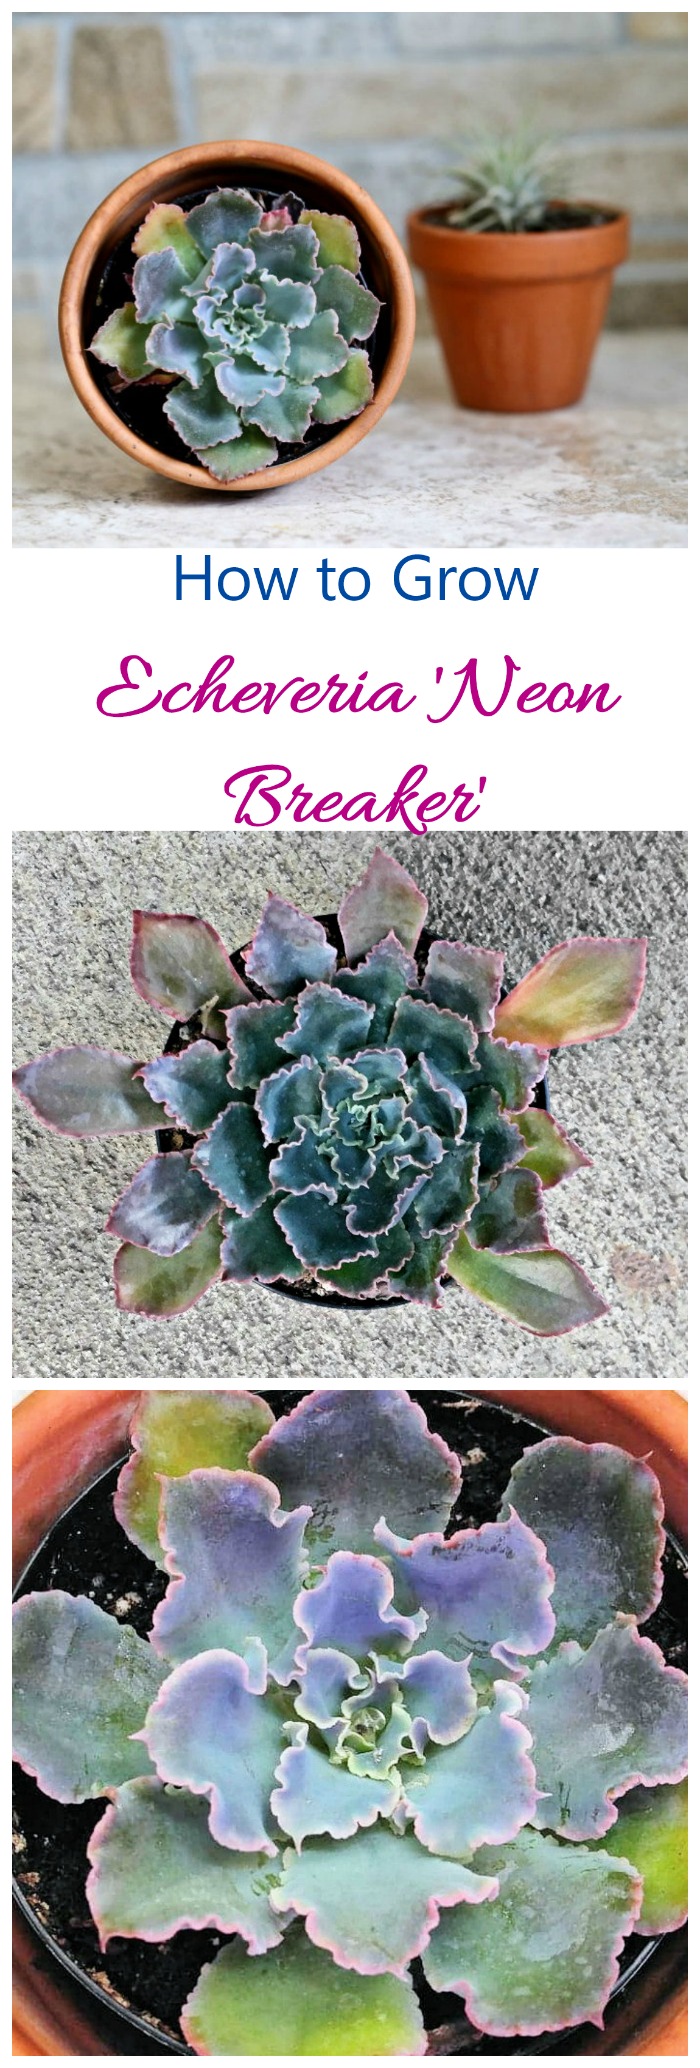 एचेवेरिया नियॉन ब्रेकर्स - शानदार रंग के लिए इस अद्भुत रसीले पौधे को उगाएं